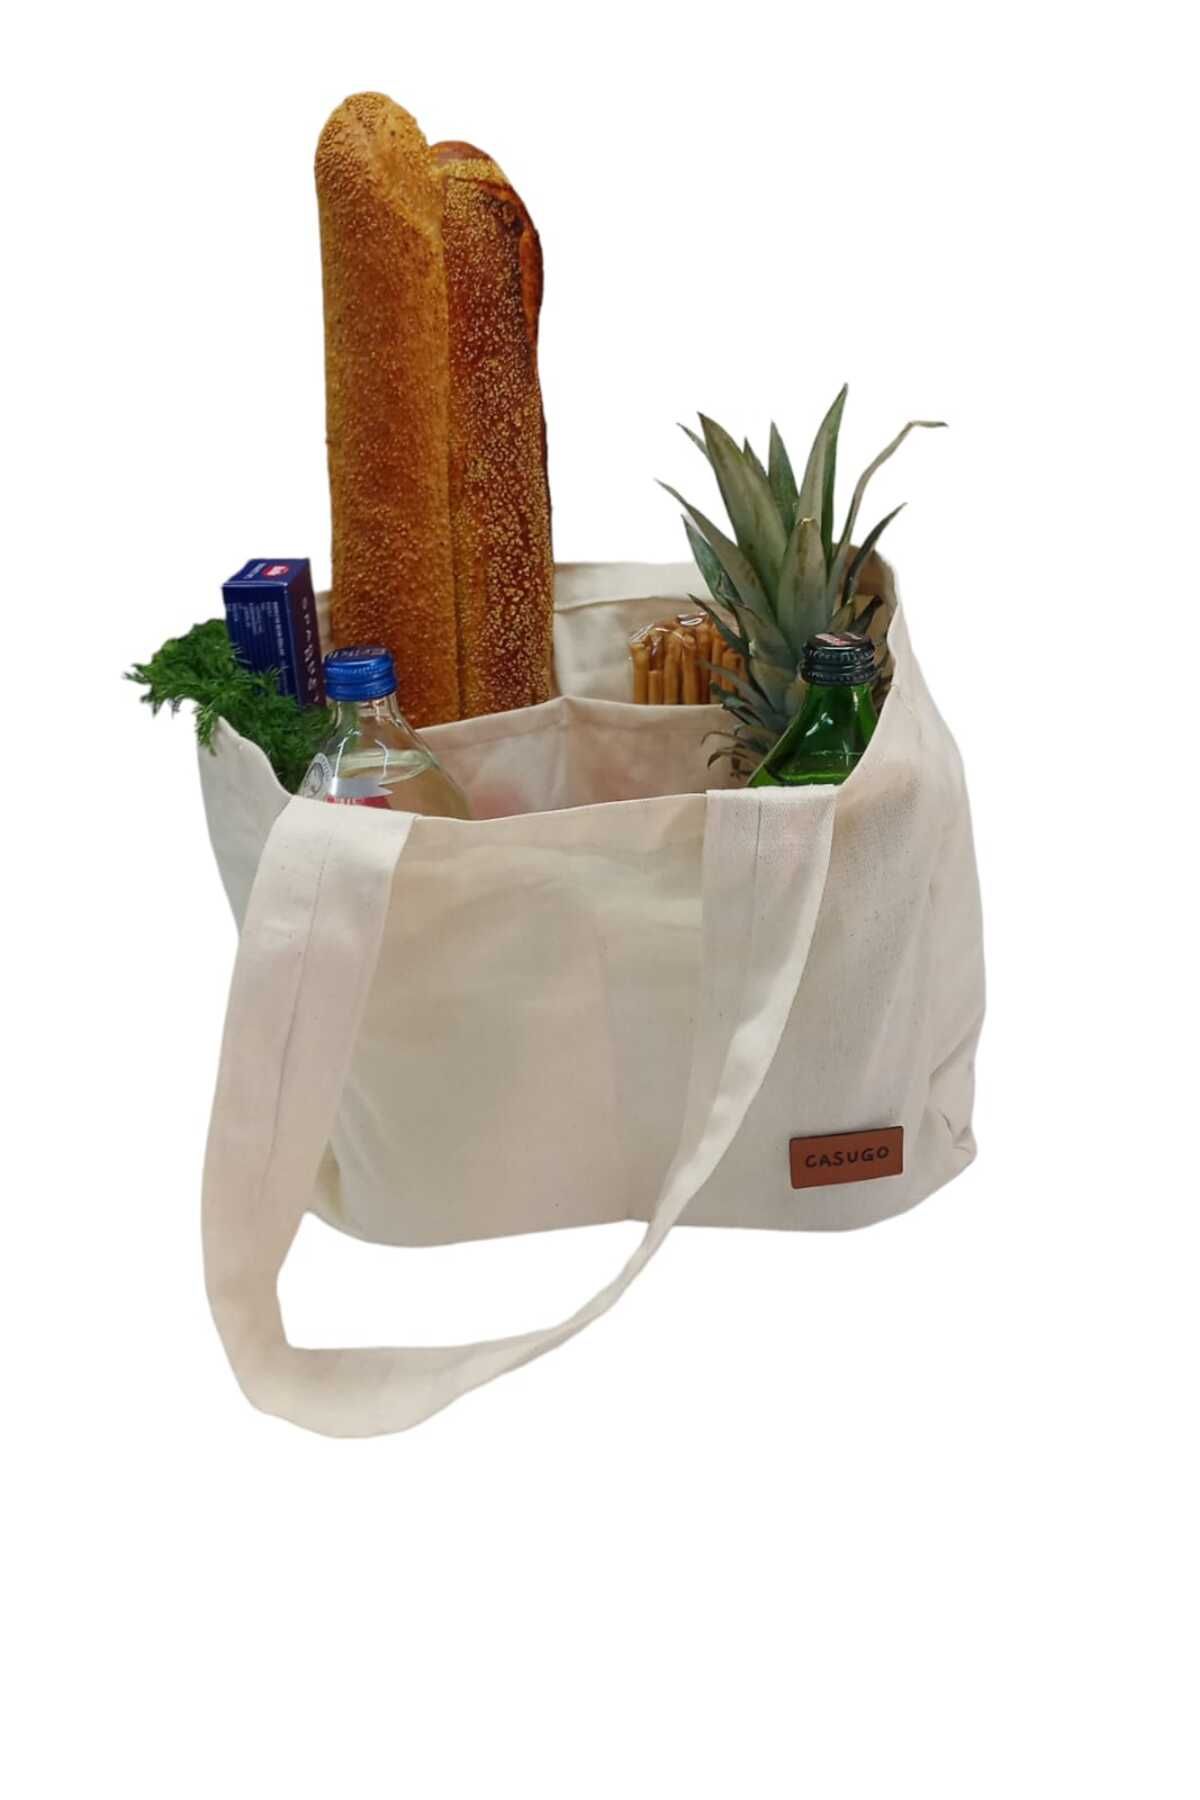 CASUGO Bölmeli Bez Alışveriş Çantası ,Bölmeli Pazar Piknik Çantası ,Çok amaçlı bölmeli çanta- EKRU - Medium